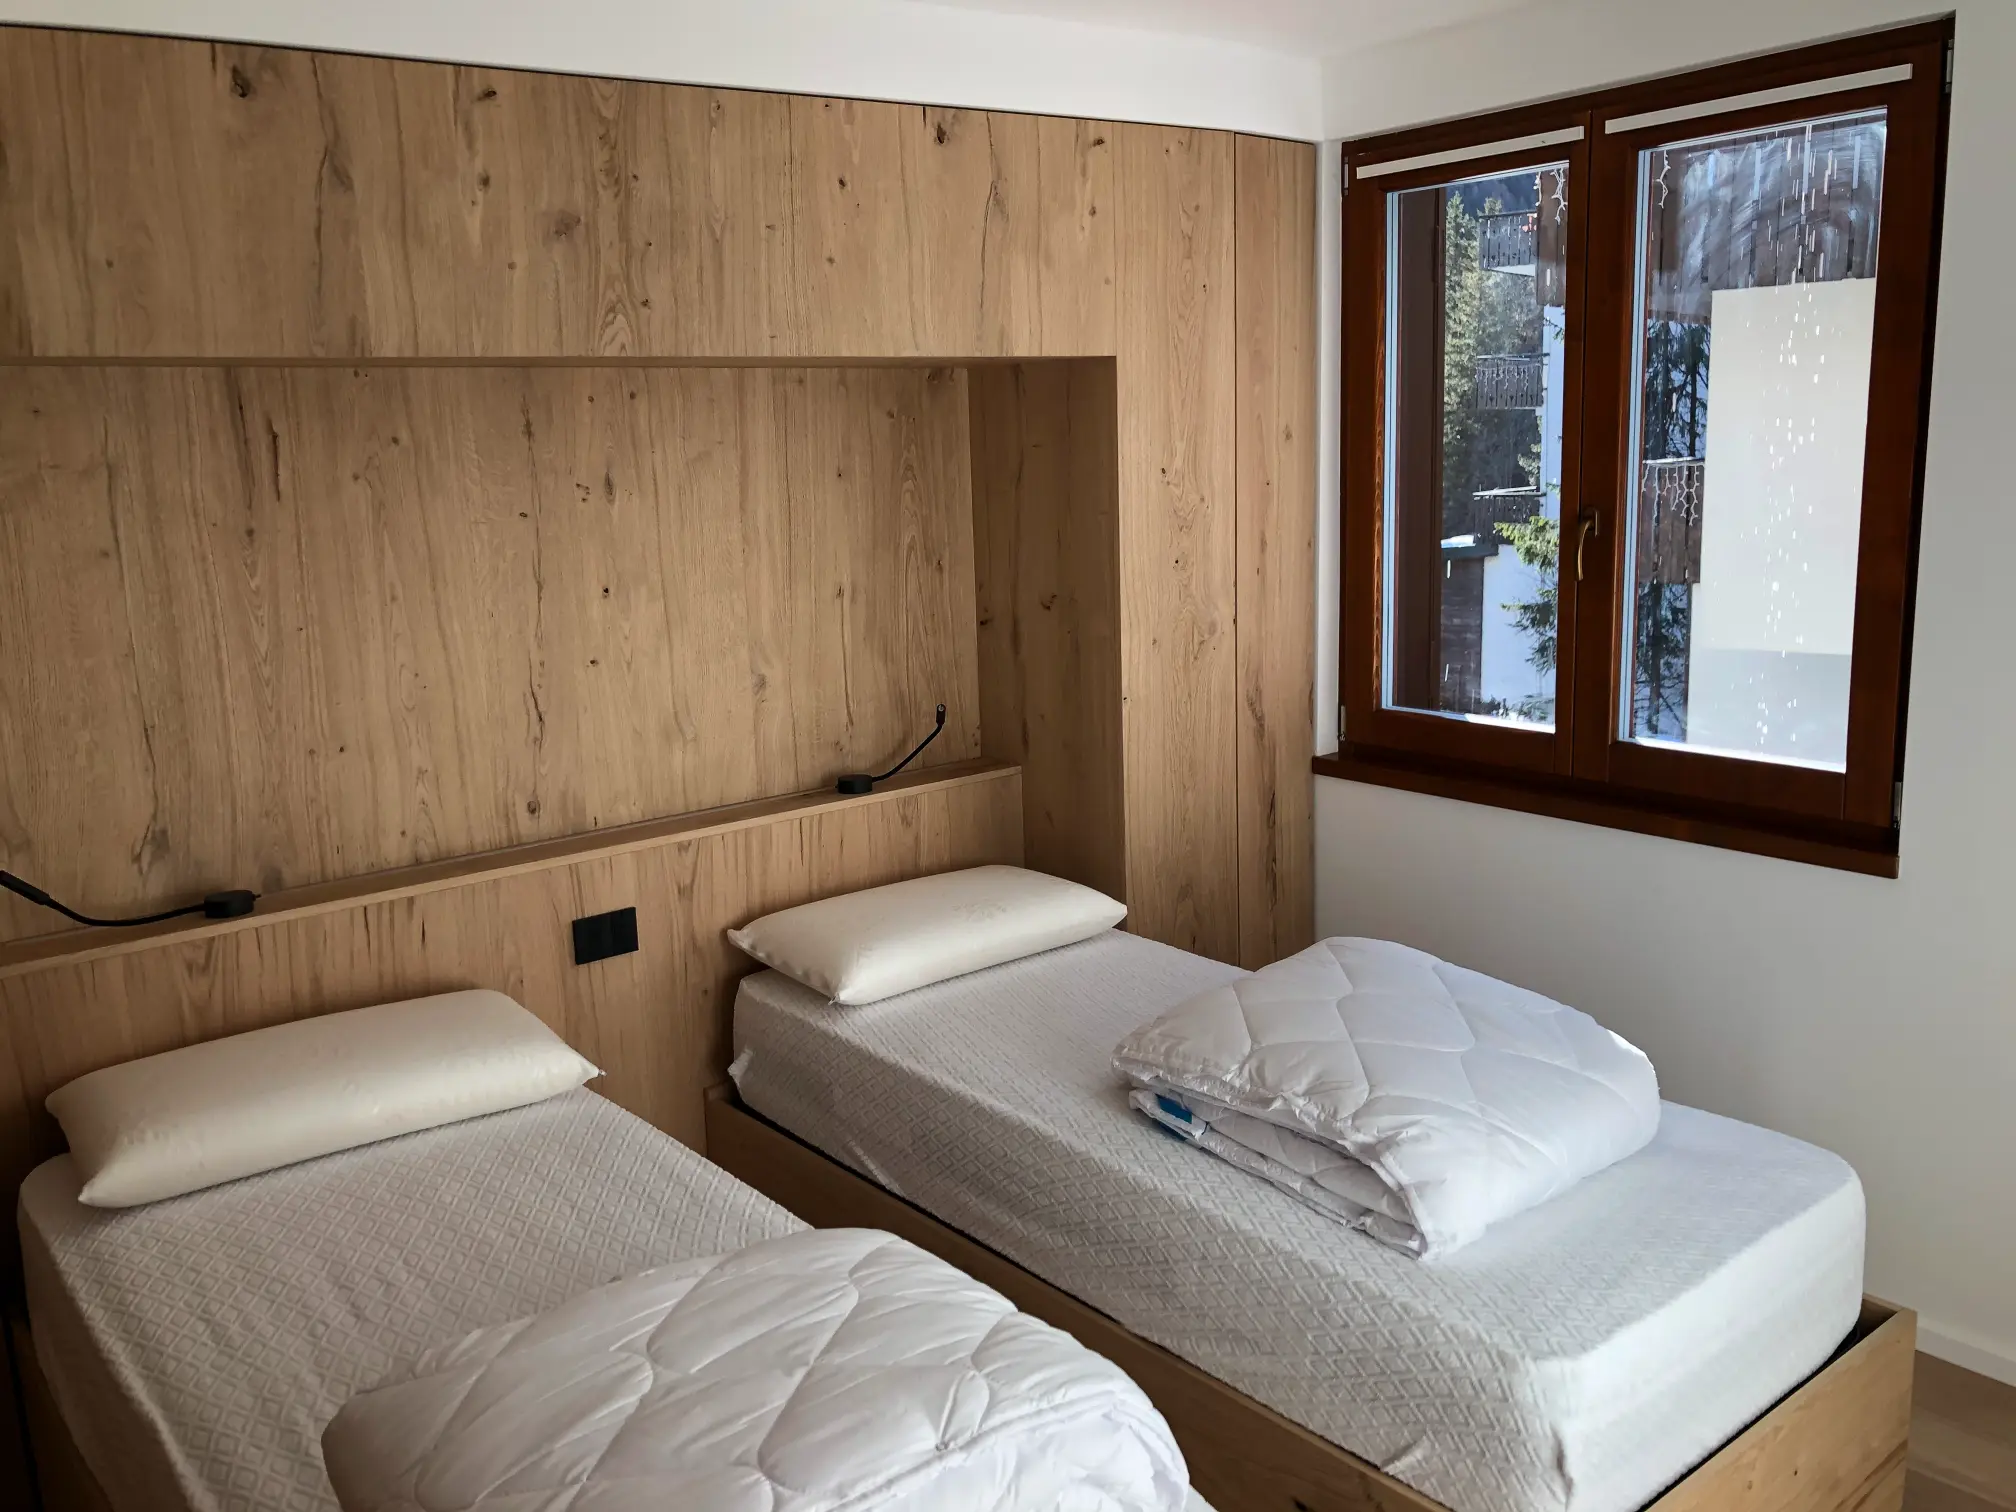 Immagine interni Alpine Design - Camera da letto